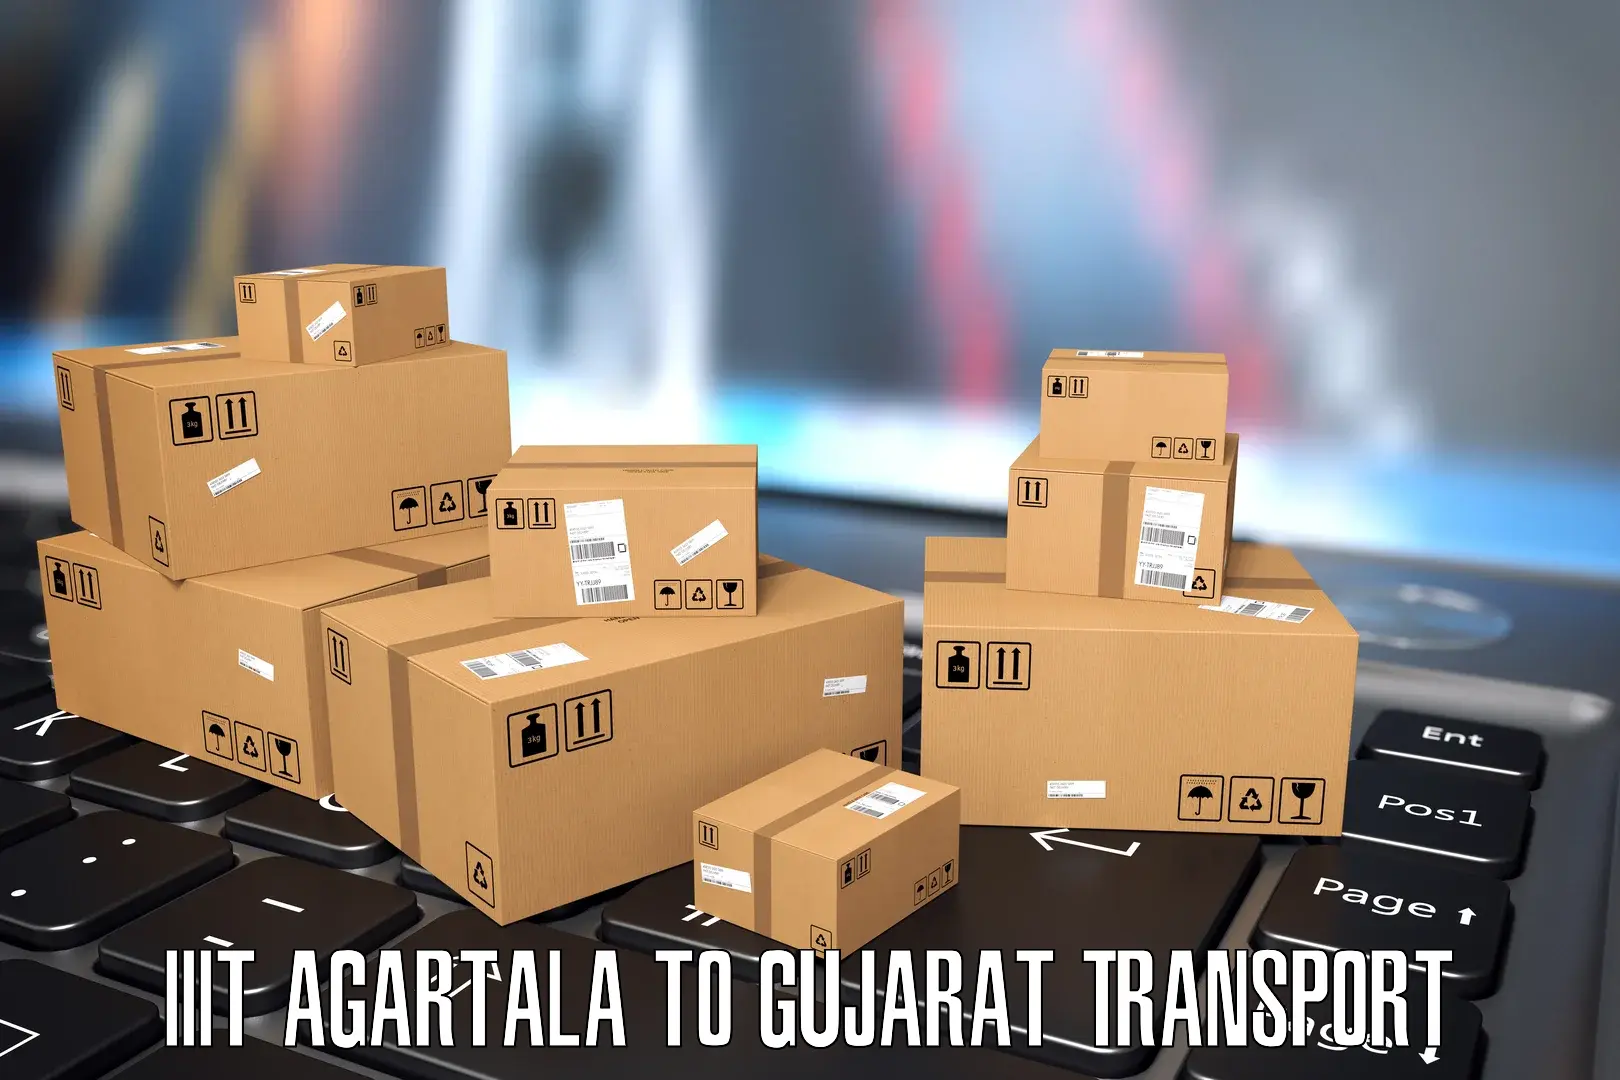 Nearby transport service IIIT Agartala to Modasa